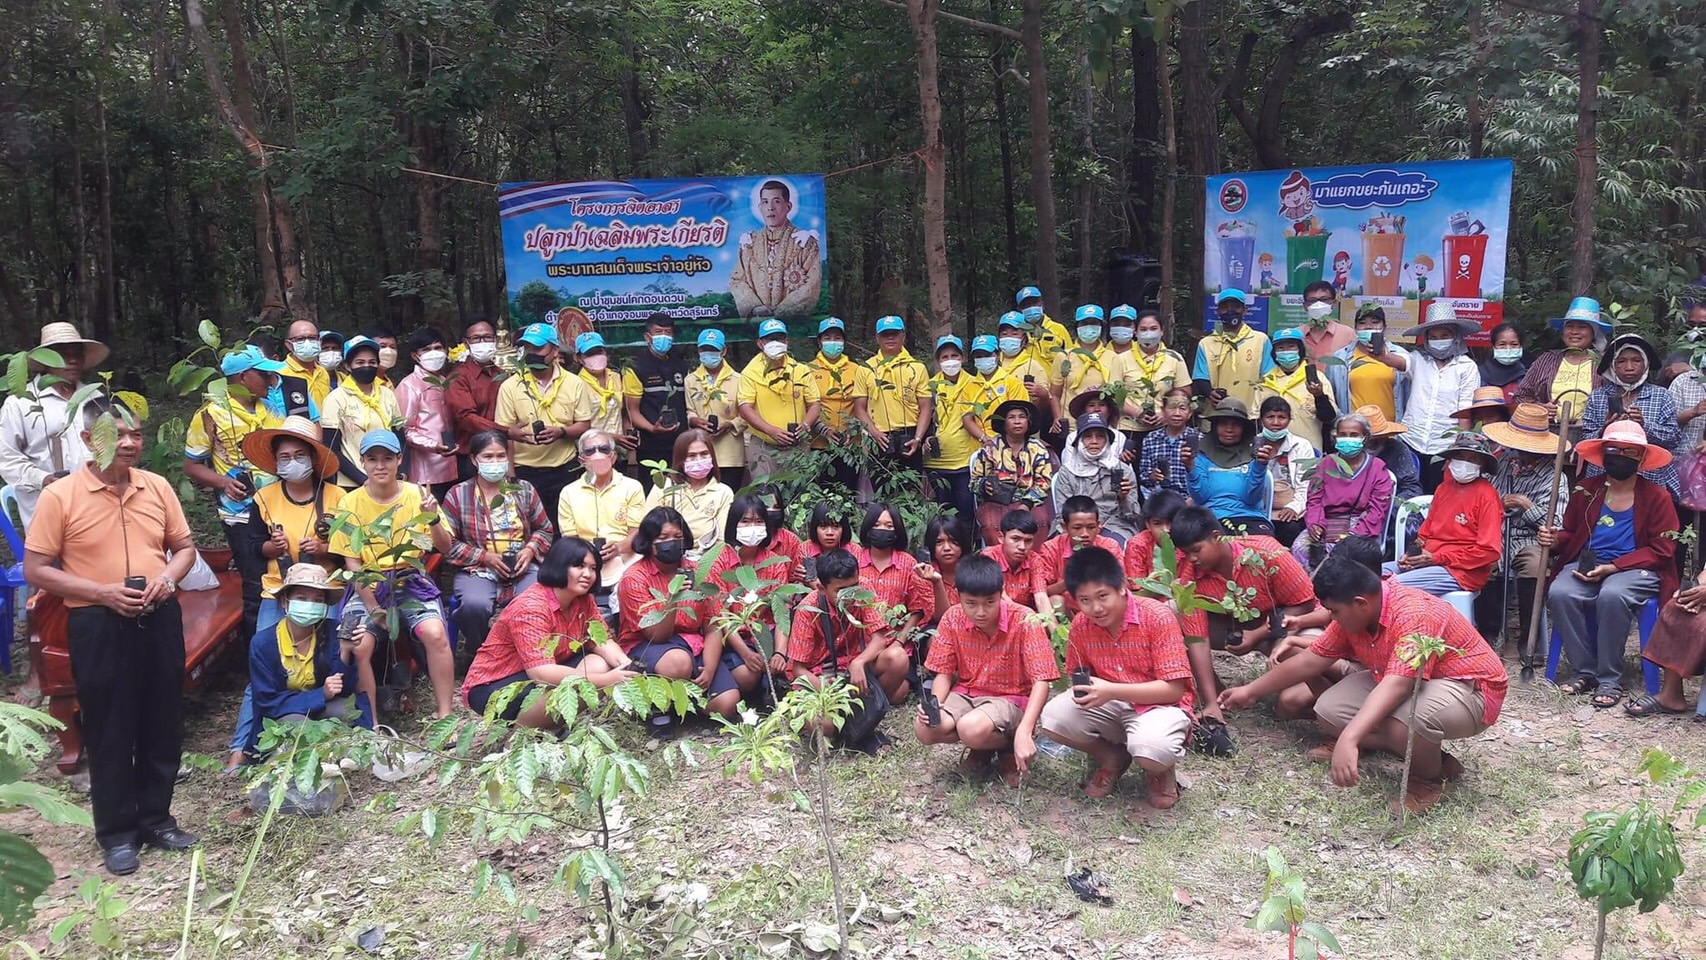 กิจกรรมปลูกป่า บวชป่า ณ ป่าโคกดอนดวน (29 กรกฎาคม 2565)